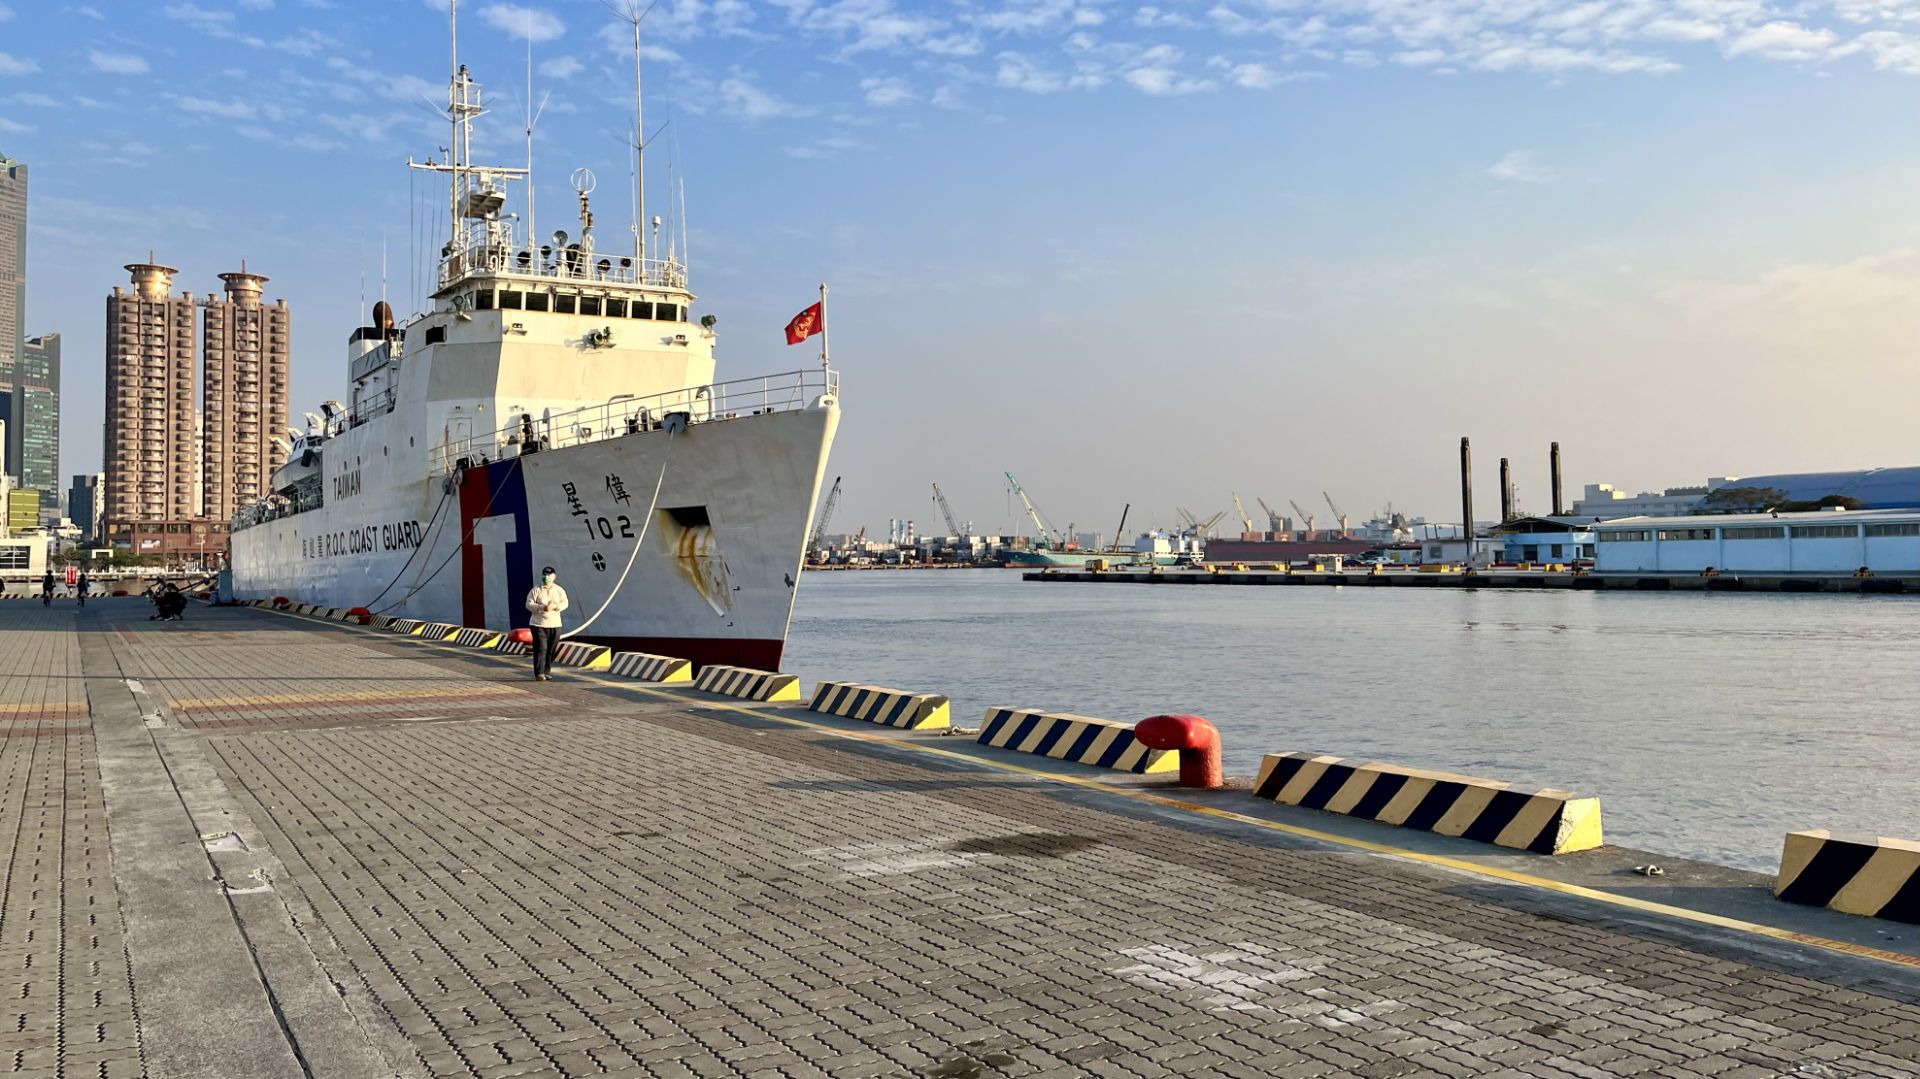 A Taiwan Coast Guard vessel tied up at port.